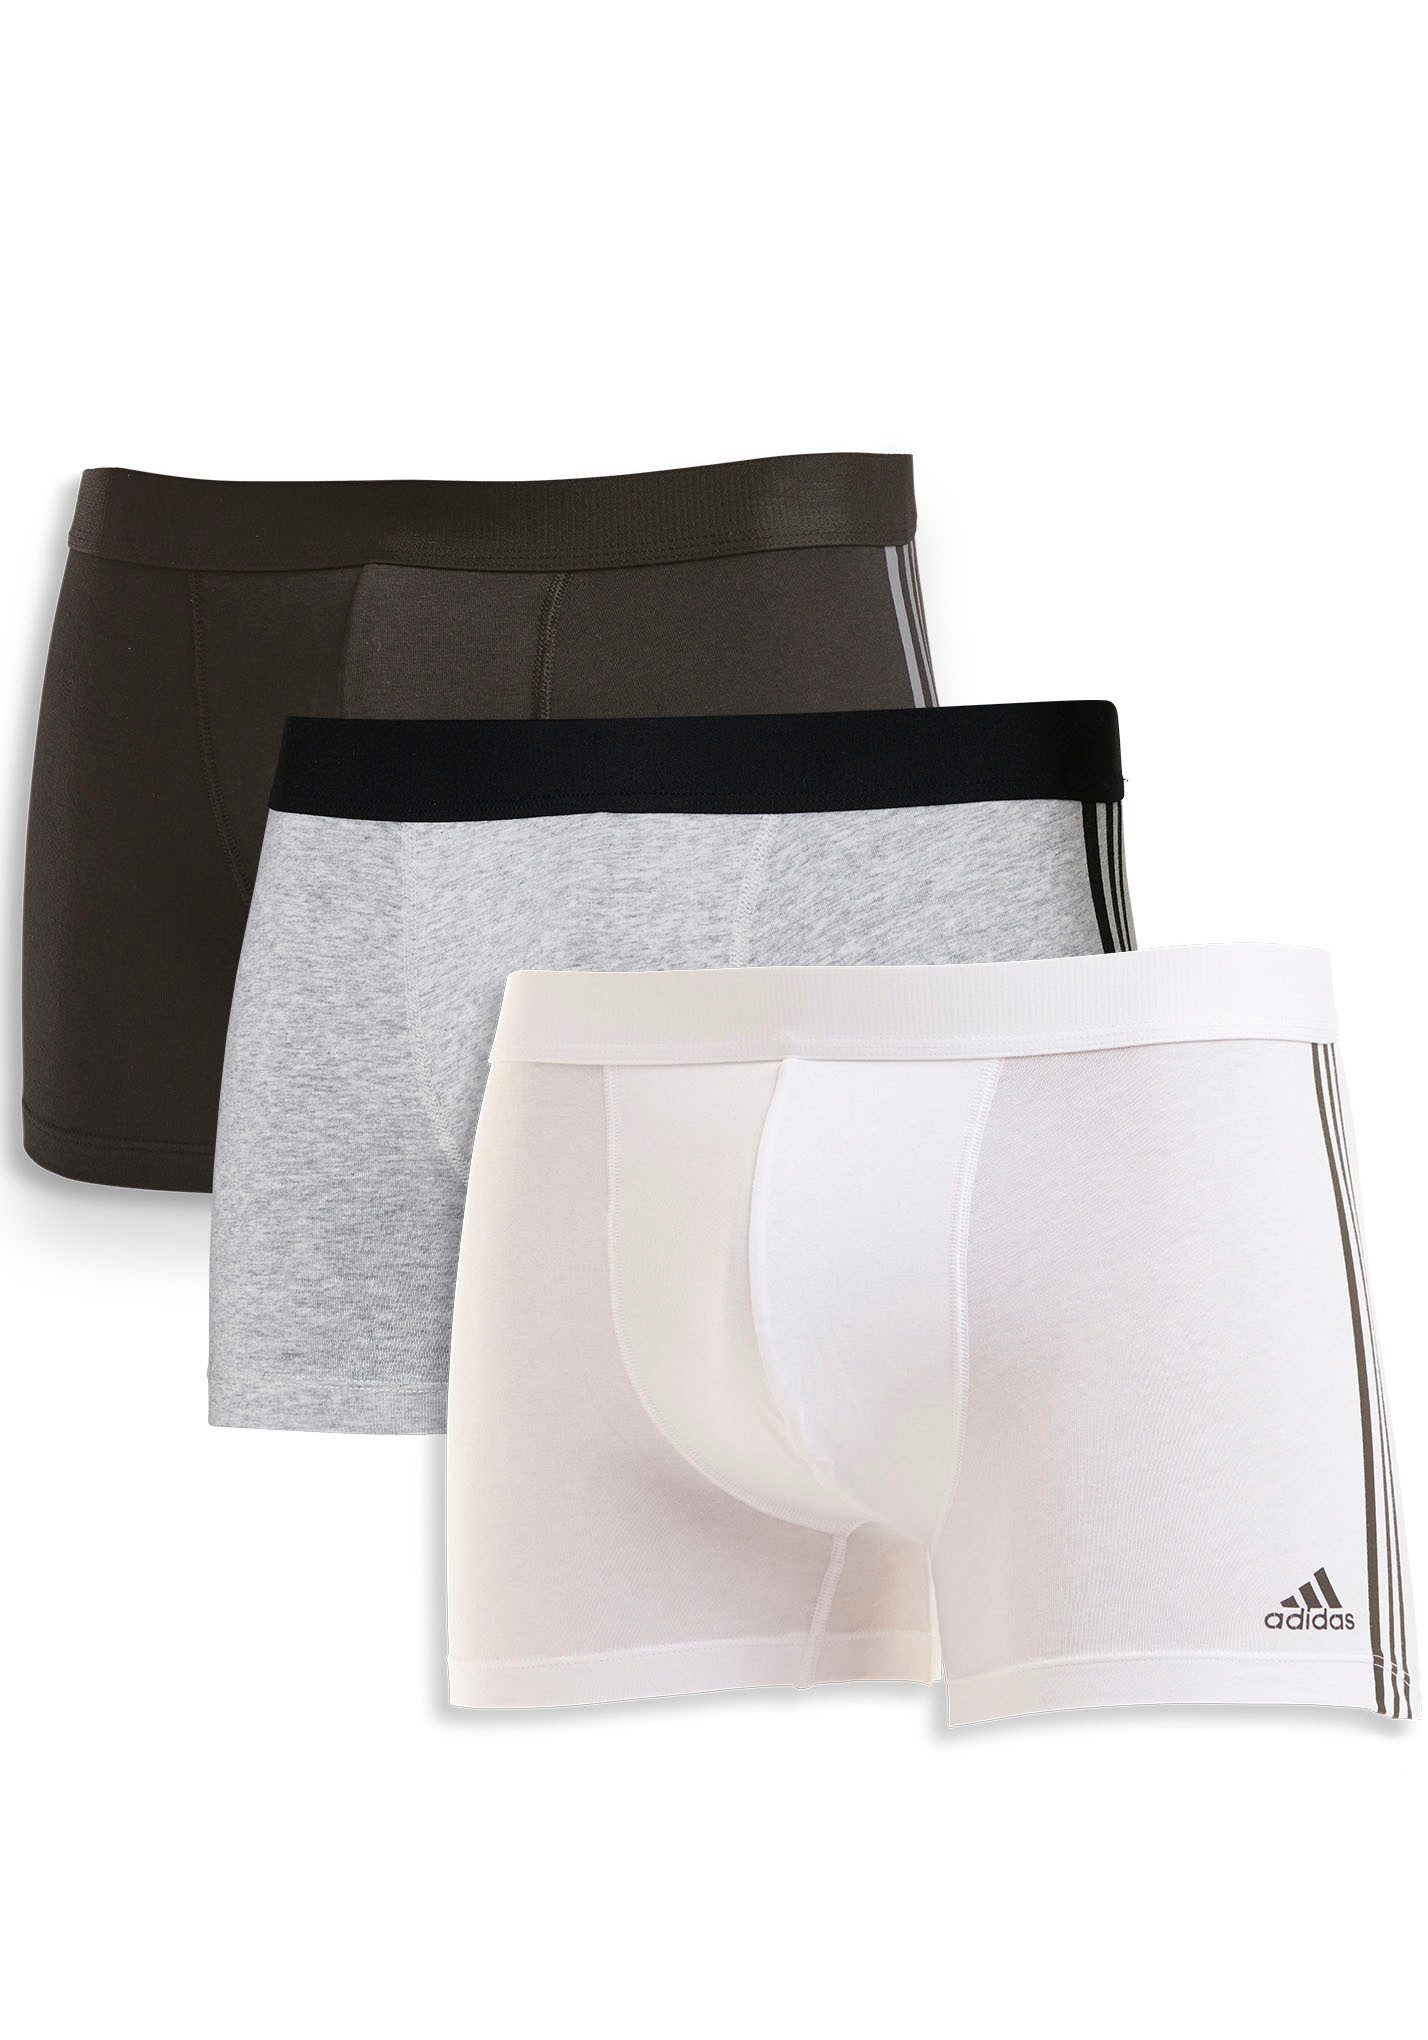 adidas Sportswear Boxer "Active Flex Cotton" (3er-Pack) schnell trocknend und feuchtigkeitstransportierend